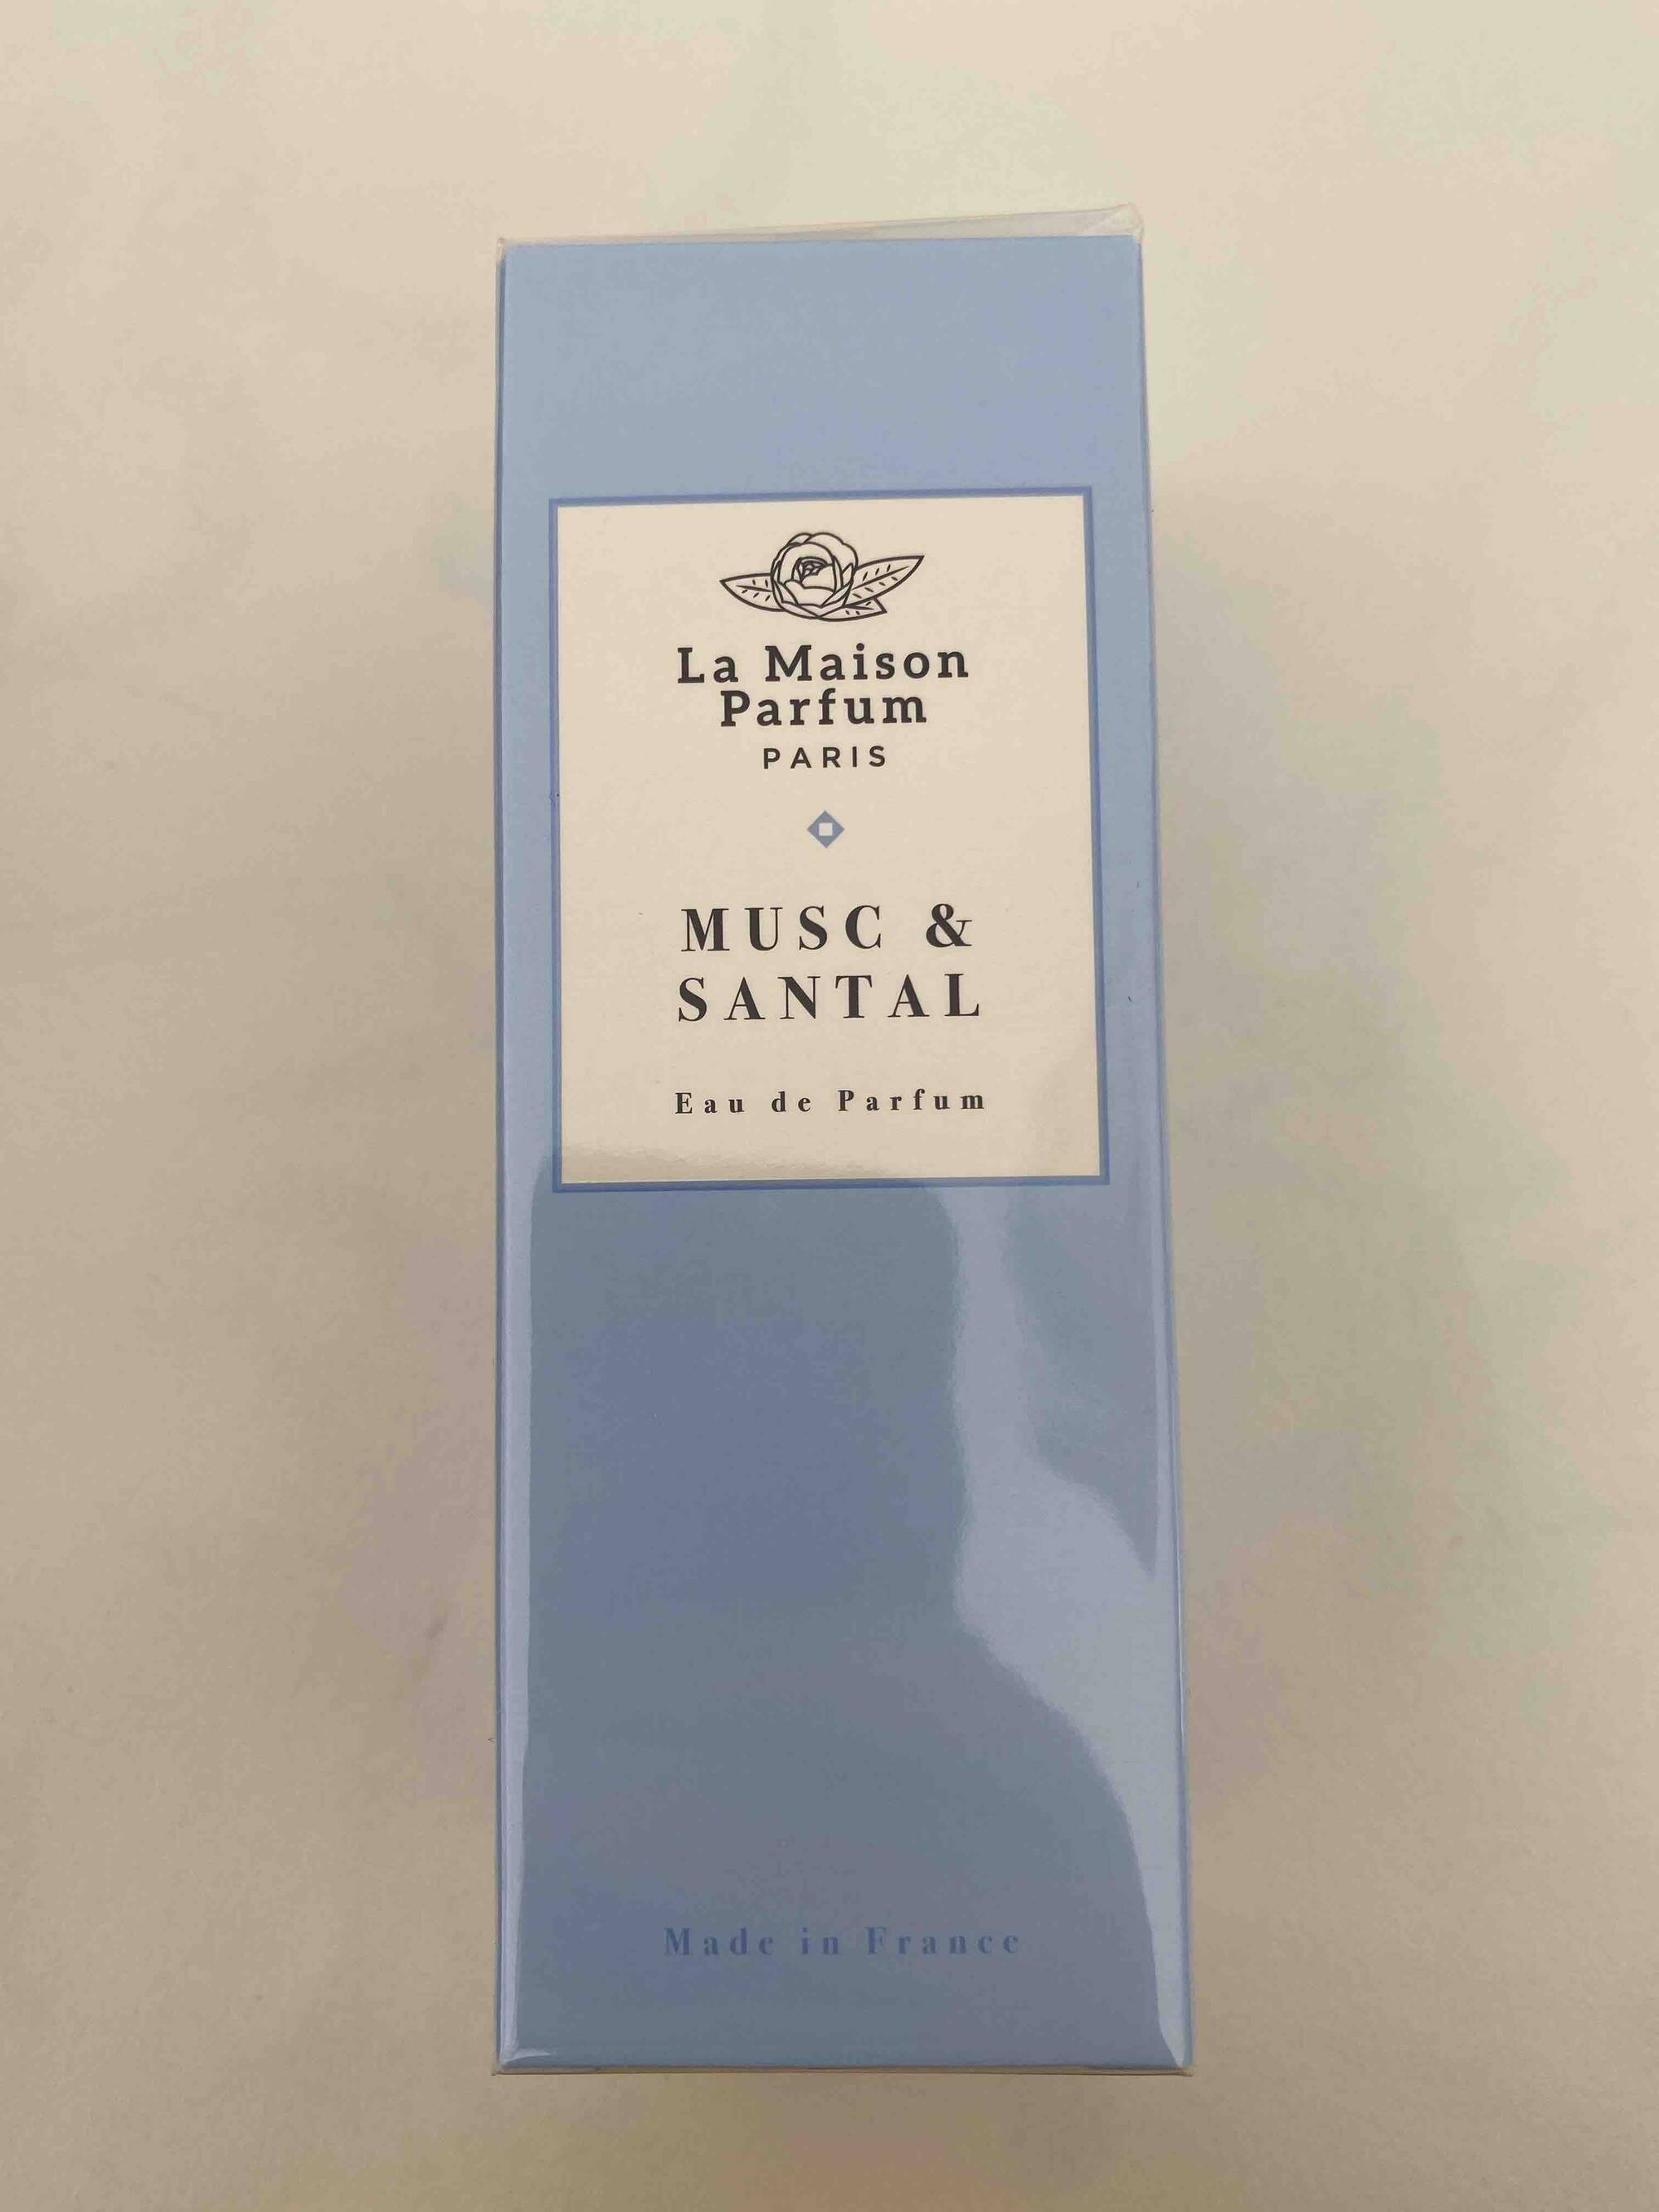 LA MAISON PARFUM - Musc & santal - Eau de parfum